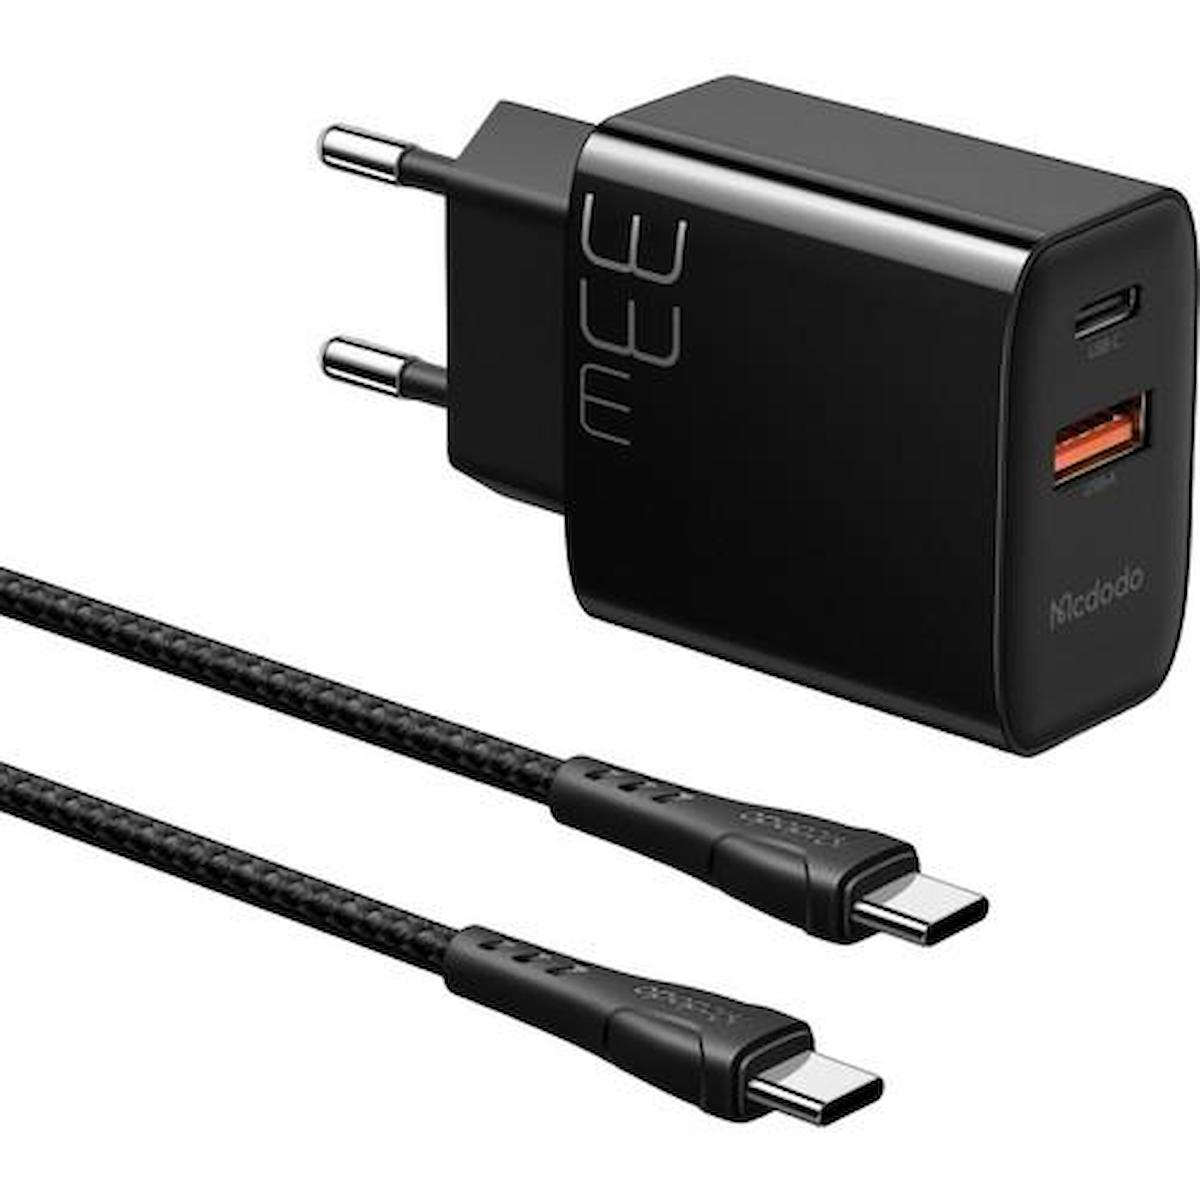 Mcdodo CH-0922 Universal USB Kablolu 33 W Hızlı Şarj Aleti Siyah